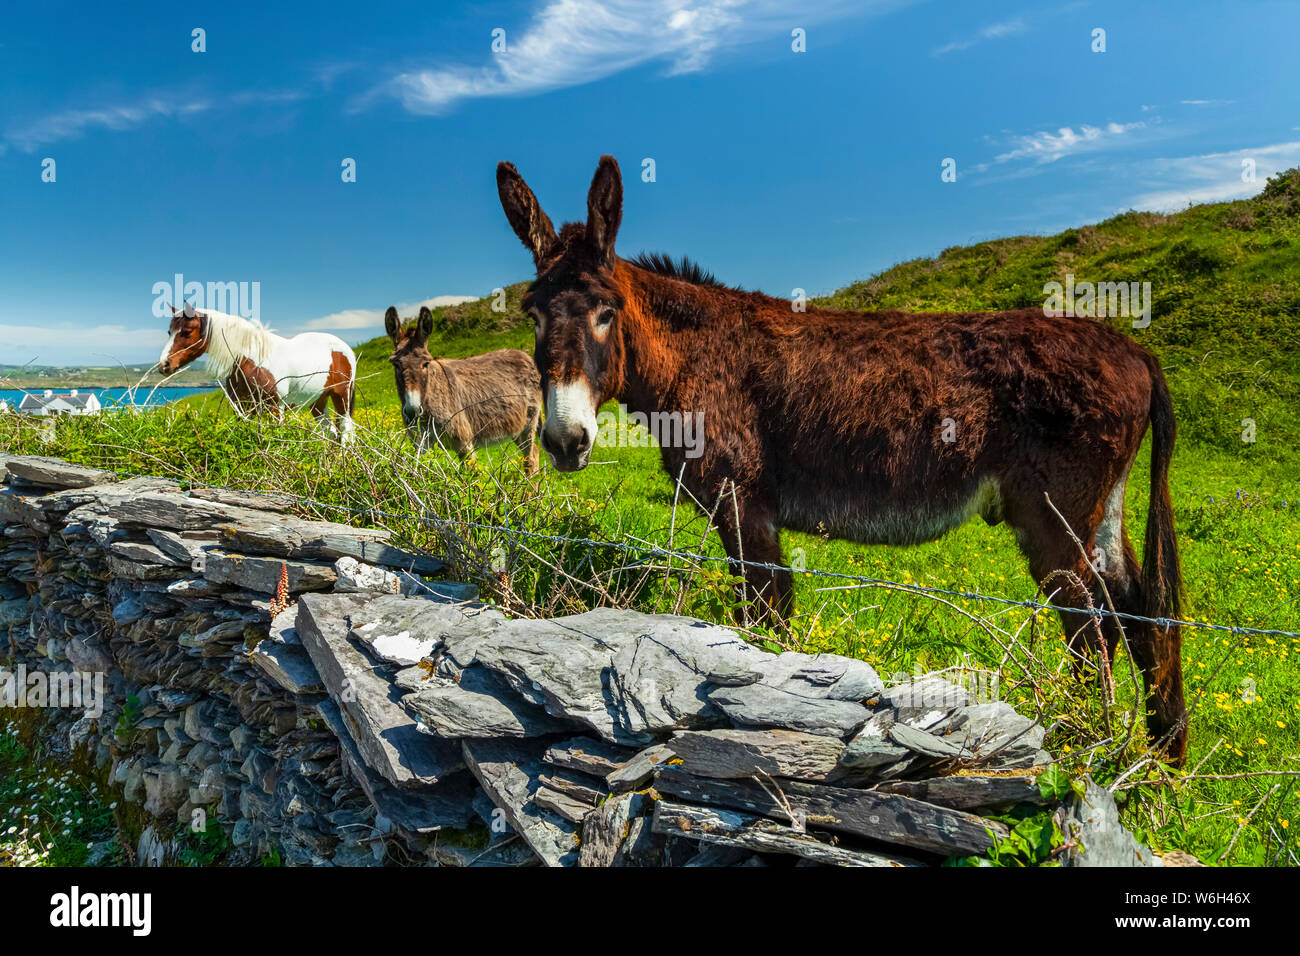 Cheval et deux ânes paît dans l'herbe luxuriante dans un champ le long de la côte de l'Irlande, Roaringwater Bay ; héritier Island, dans le comté de Cork, Irlande Banque D'Images